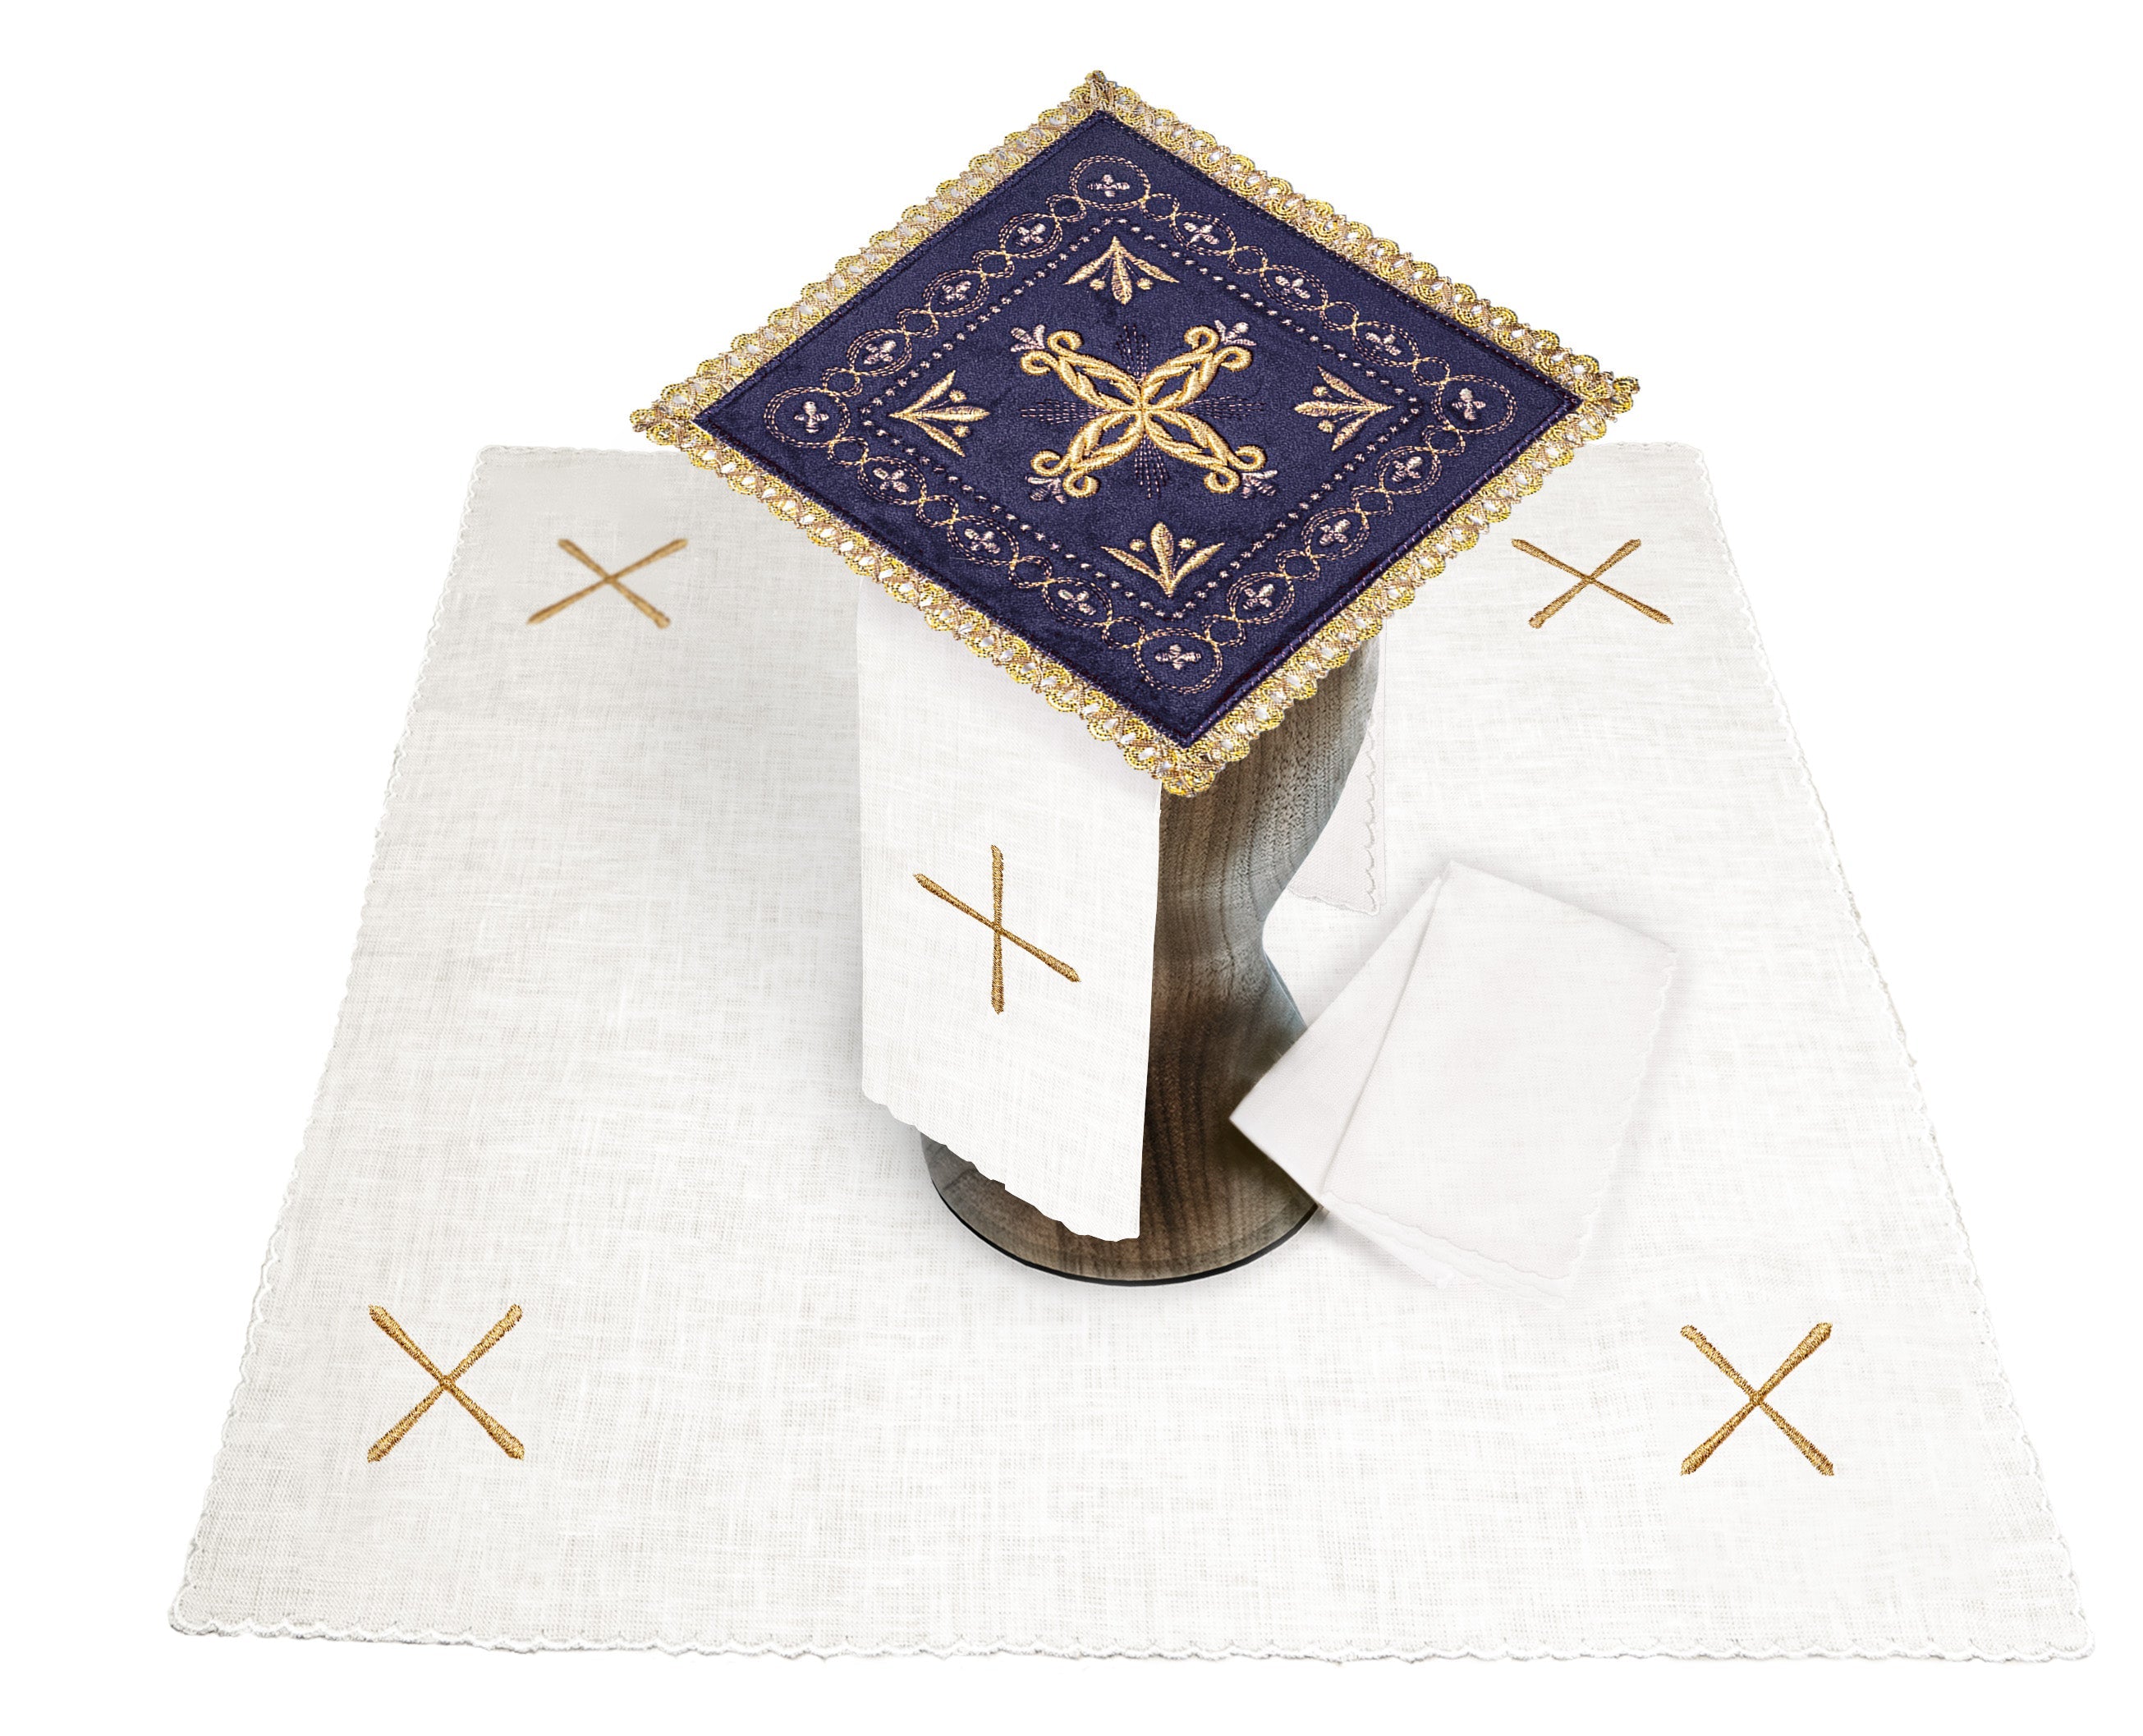 Chalice linen made of velvet with gold cross